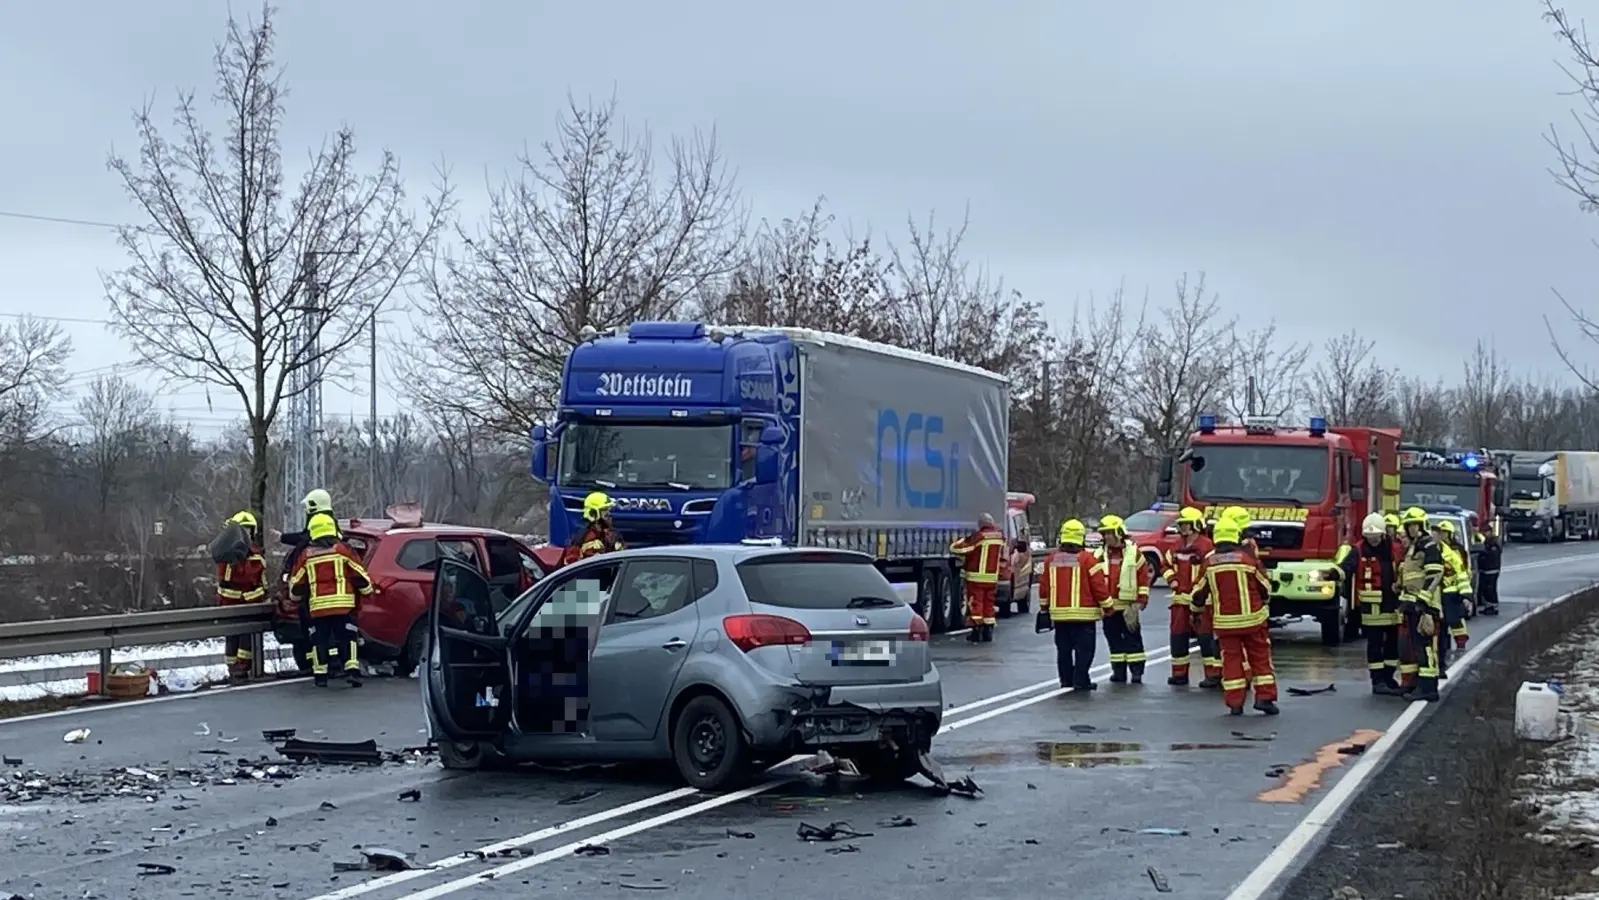 Schwerer Verkehrsunfall auf der B87 mit mehreren Toten und Verletzten (Foto: nordsachsen24.de)